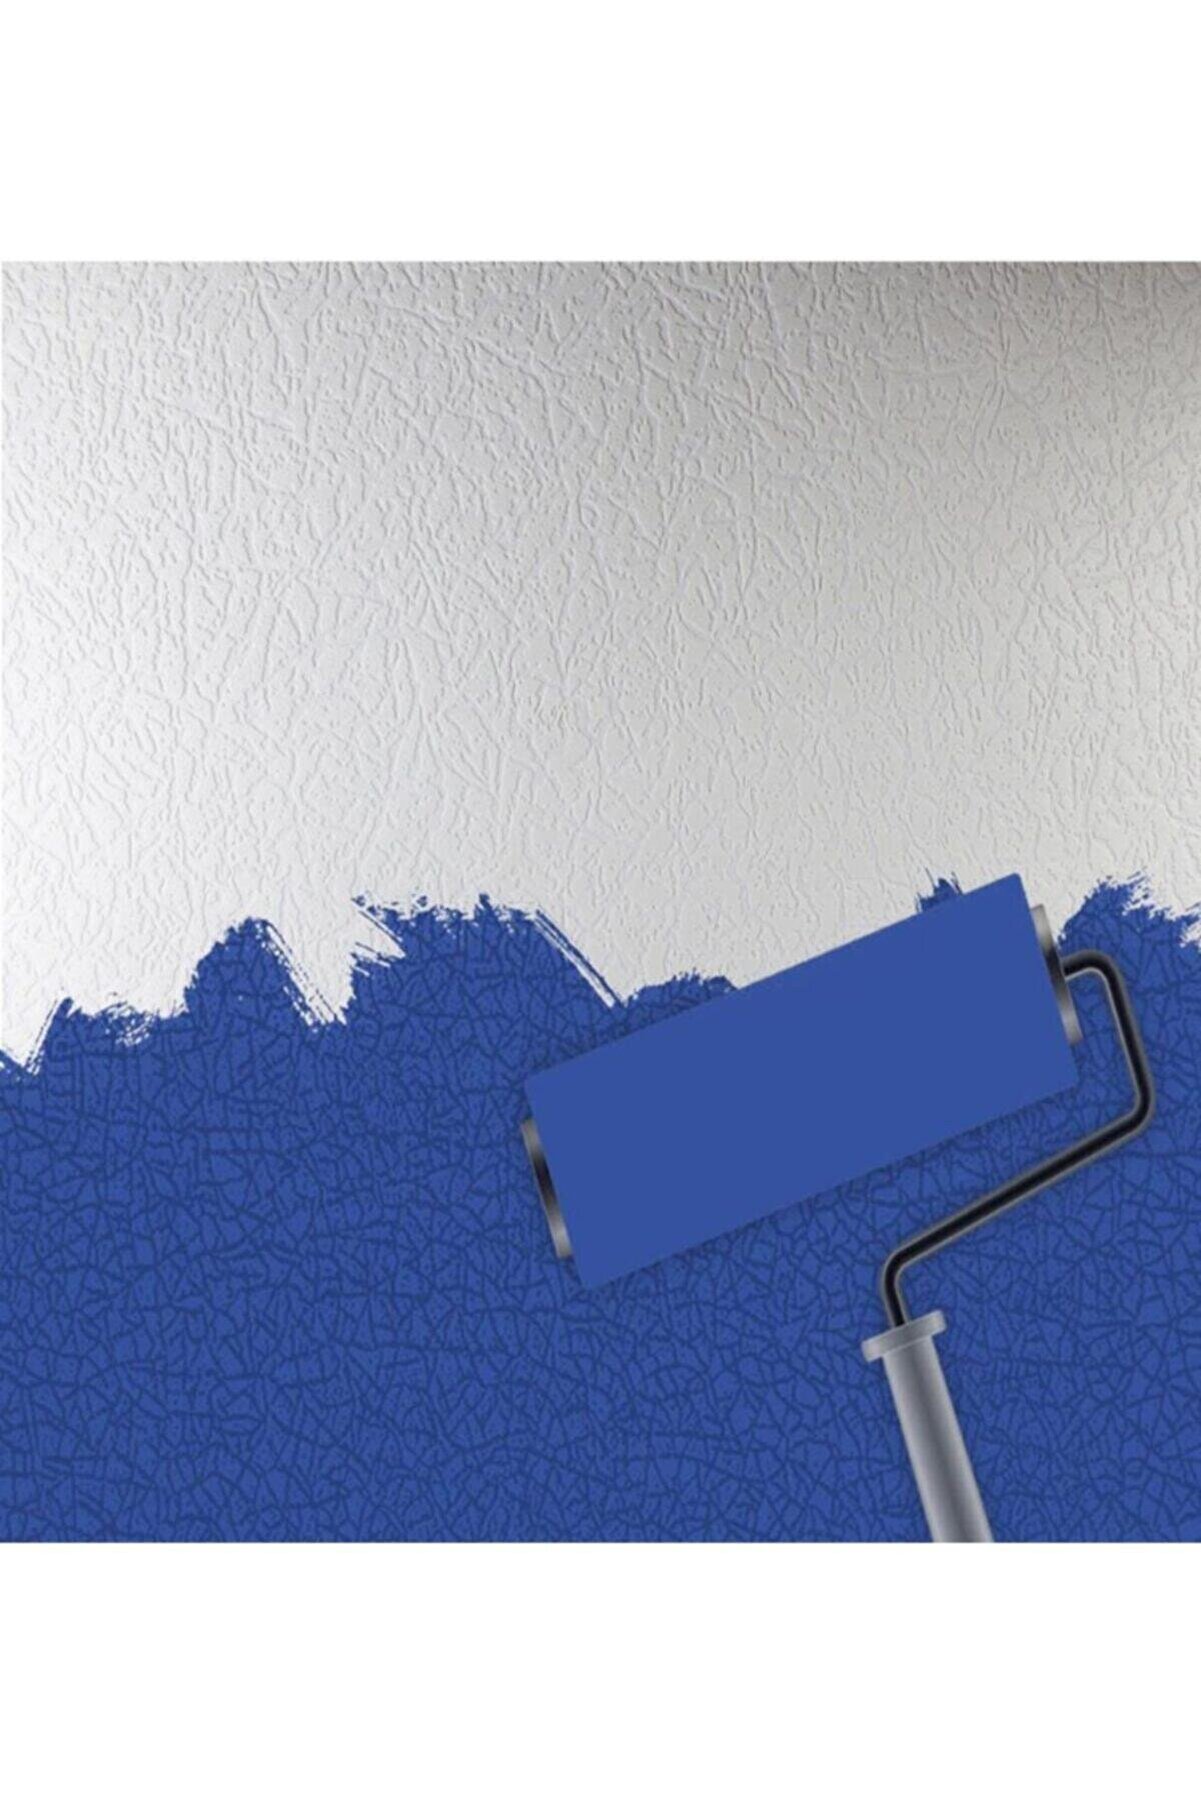 Seela 6550-1 Boyanabilir Kabartmalı Duvar Ve Tavan Kağıdı 25 M²